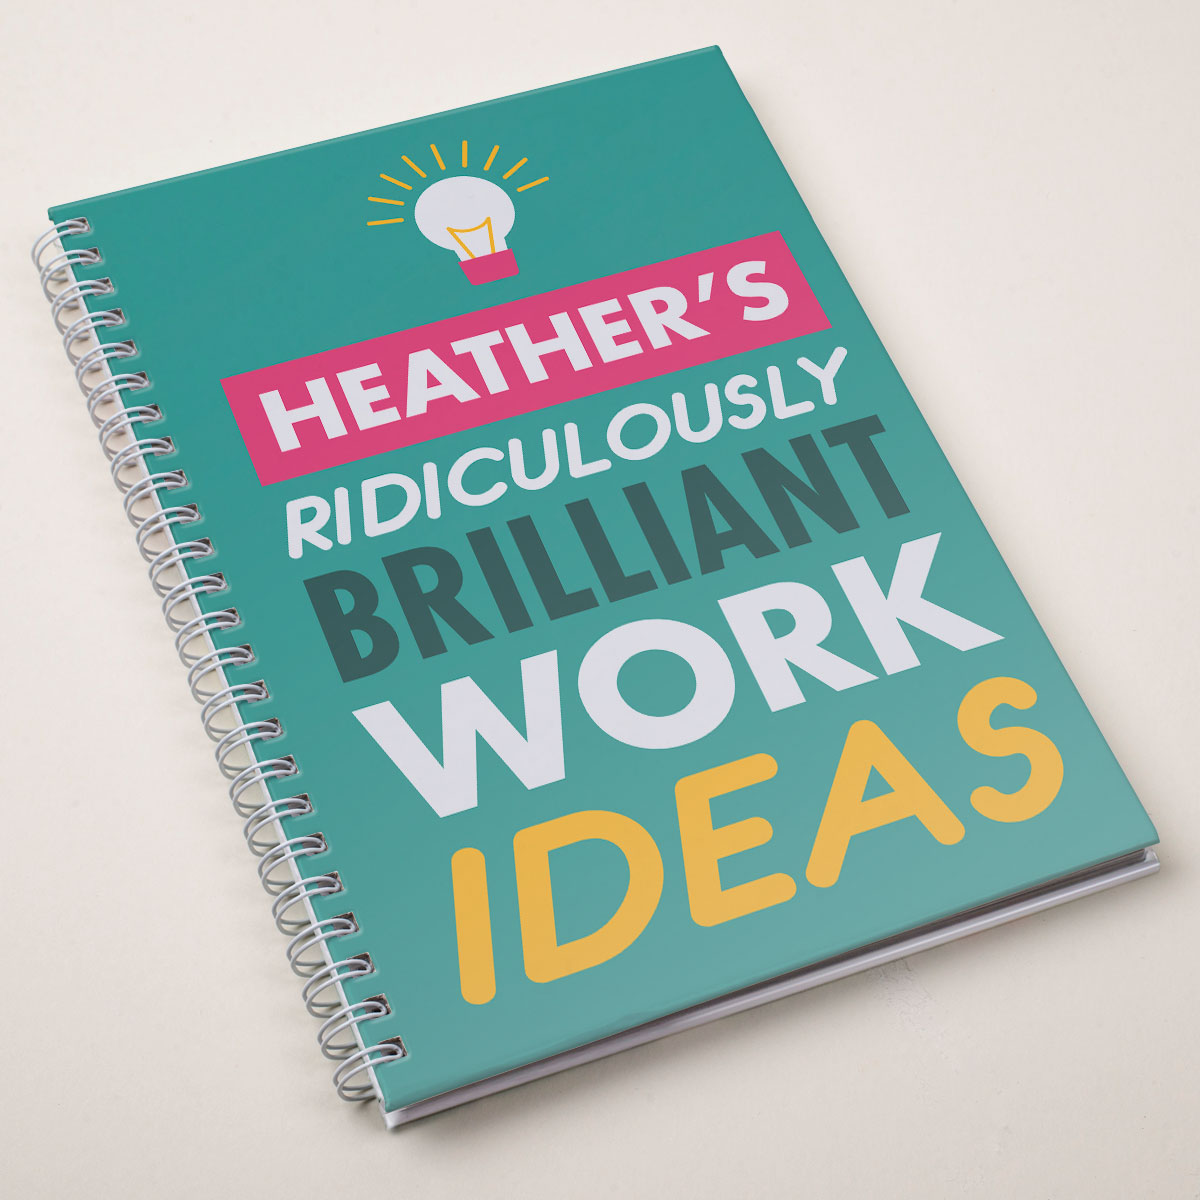 Personalised Notebook - Brilliant Work